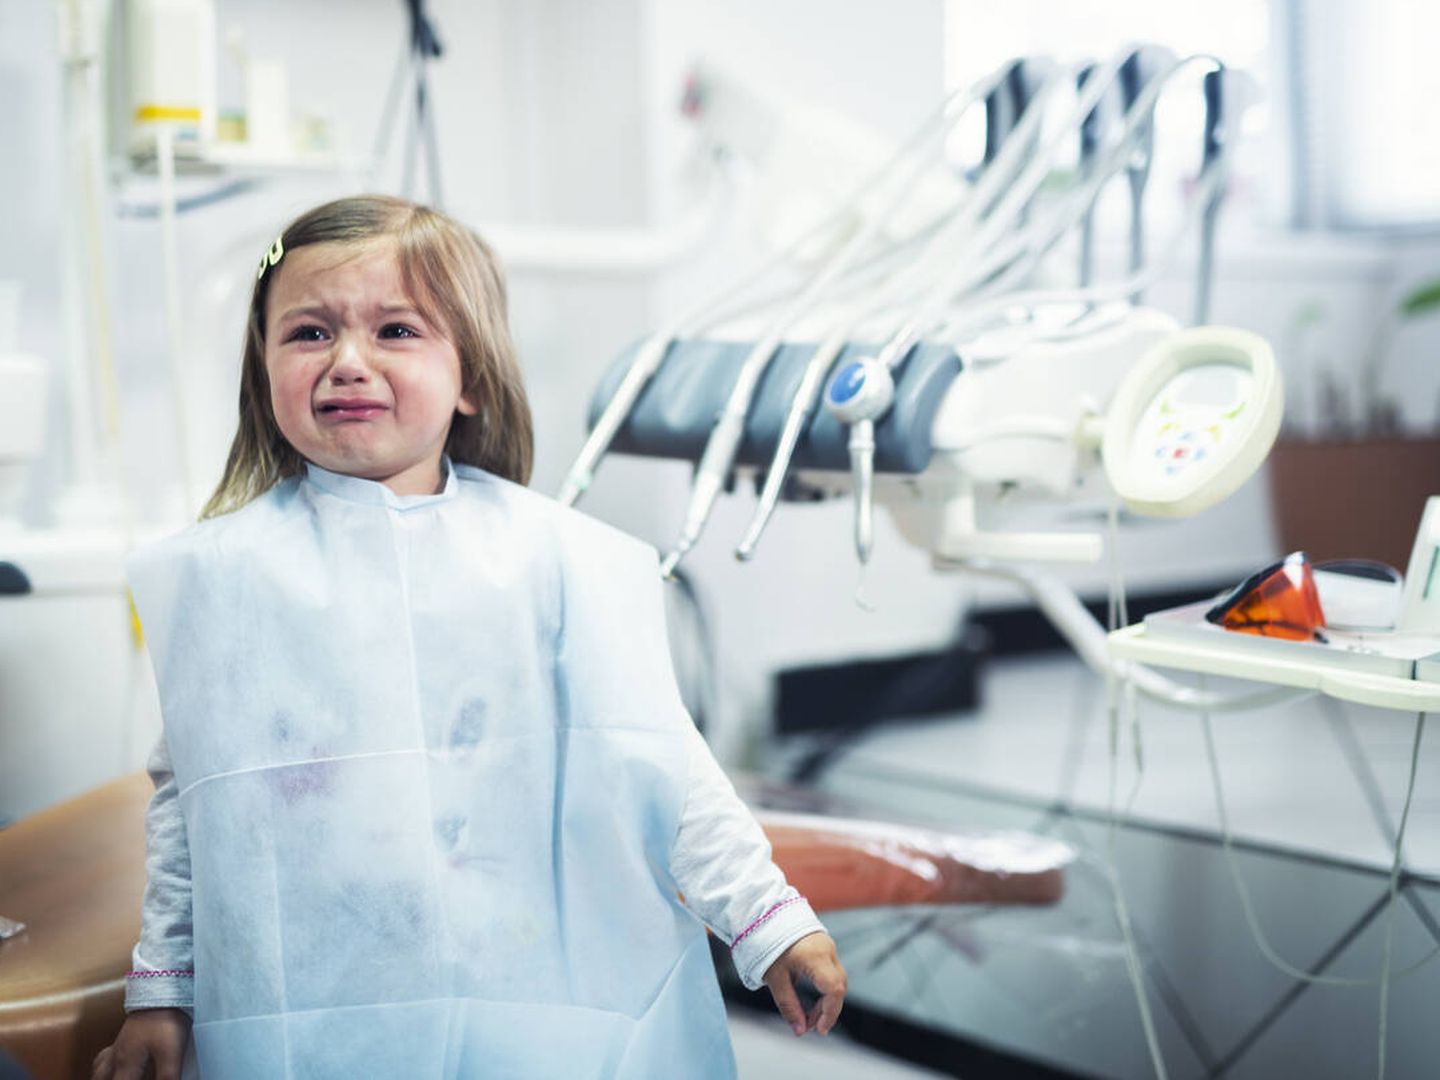 La fobia dental puede tener su origen por una mala experiencia en la infancia. (iStock)